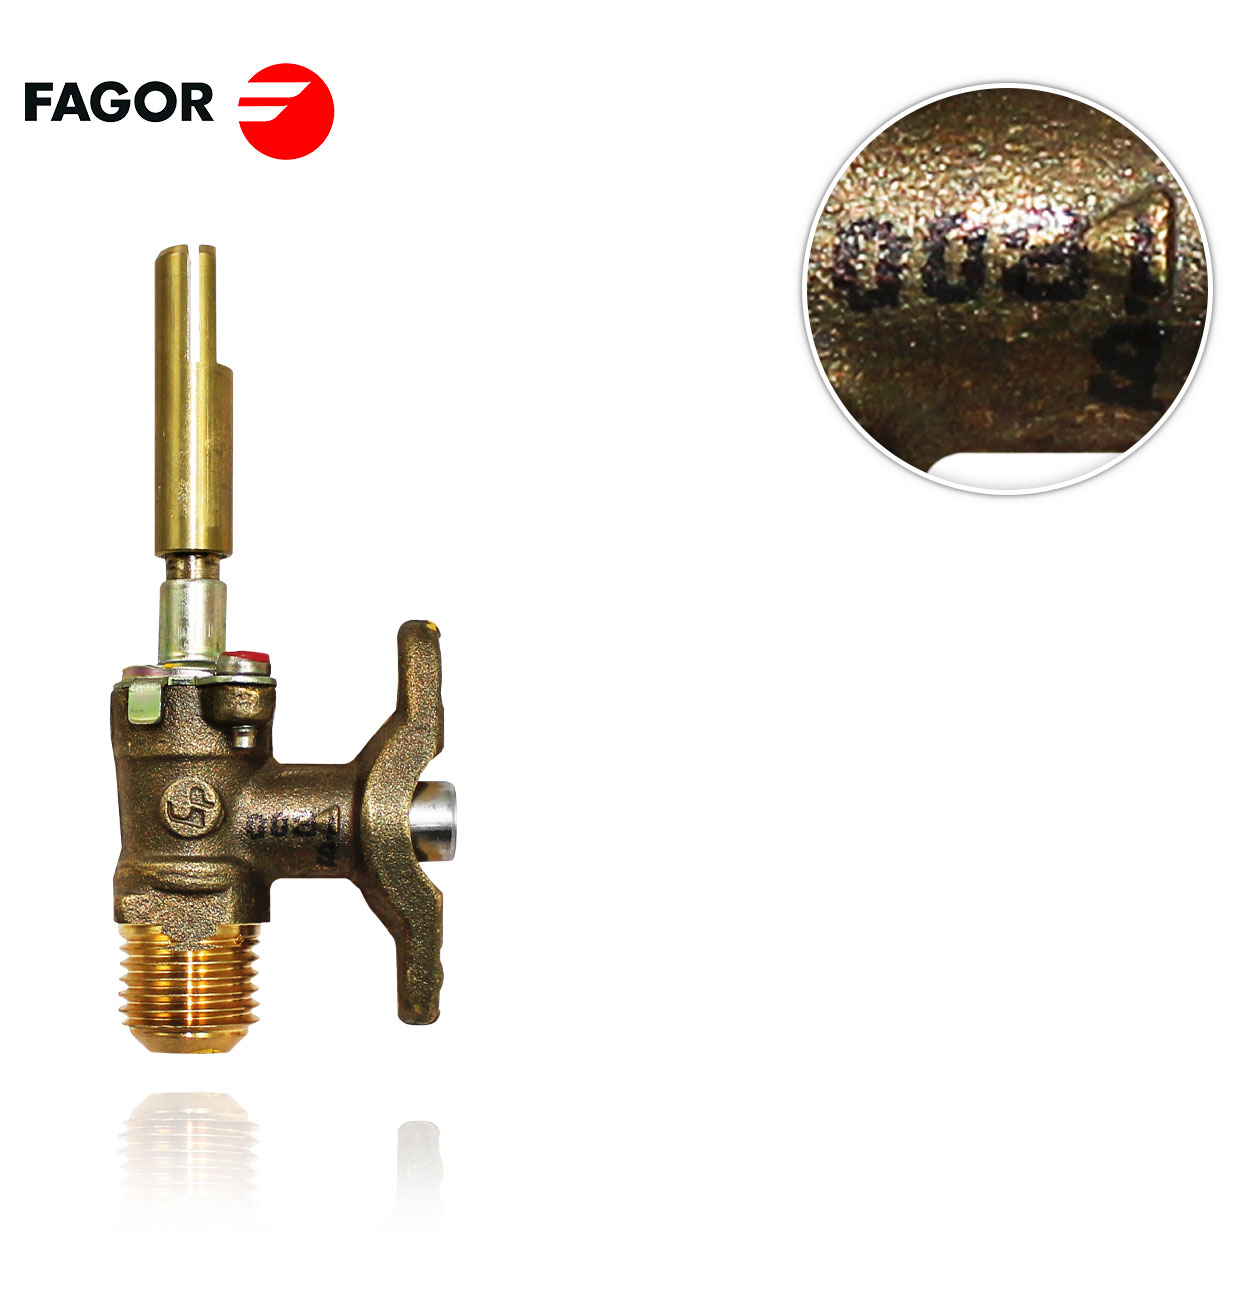 GRIFO GAS FAGOR CC1589500